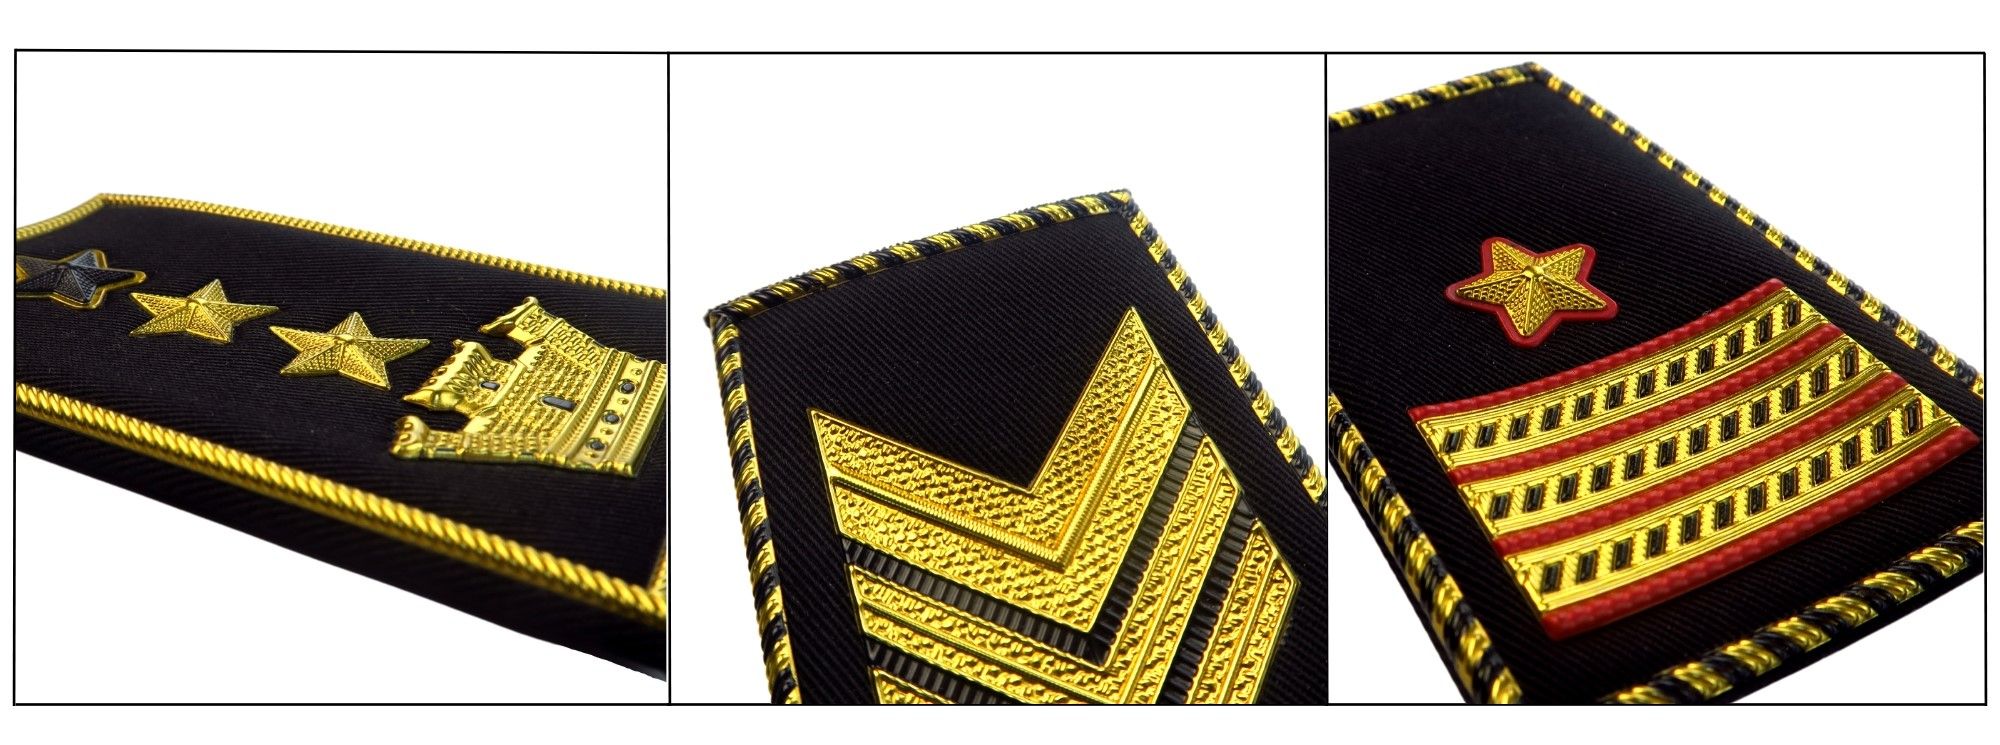 नेतृत्व का प्रतीक, नौसेना कमांड विशेष रूप से कैप्टन एपॉलेट्स में।